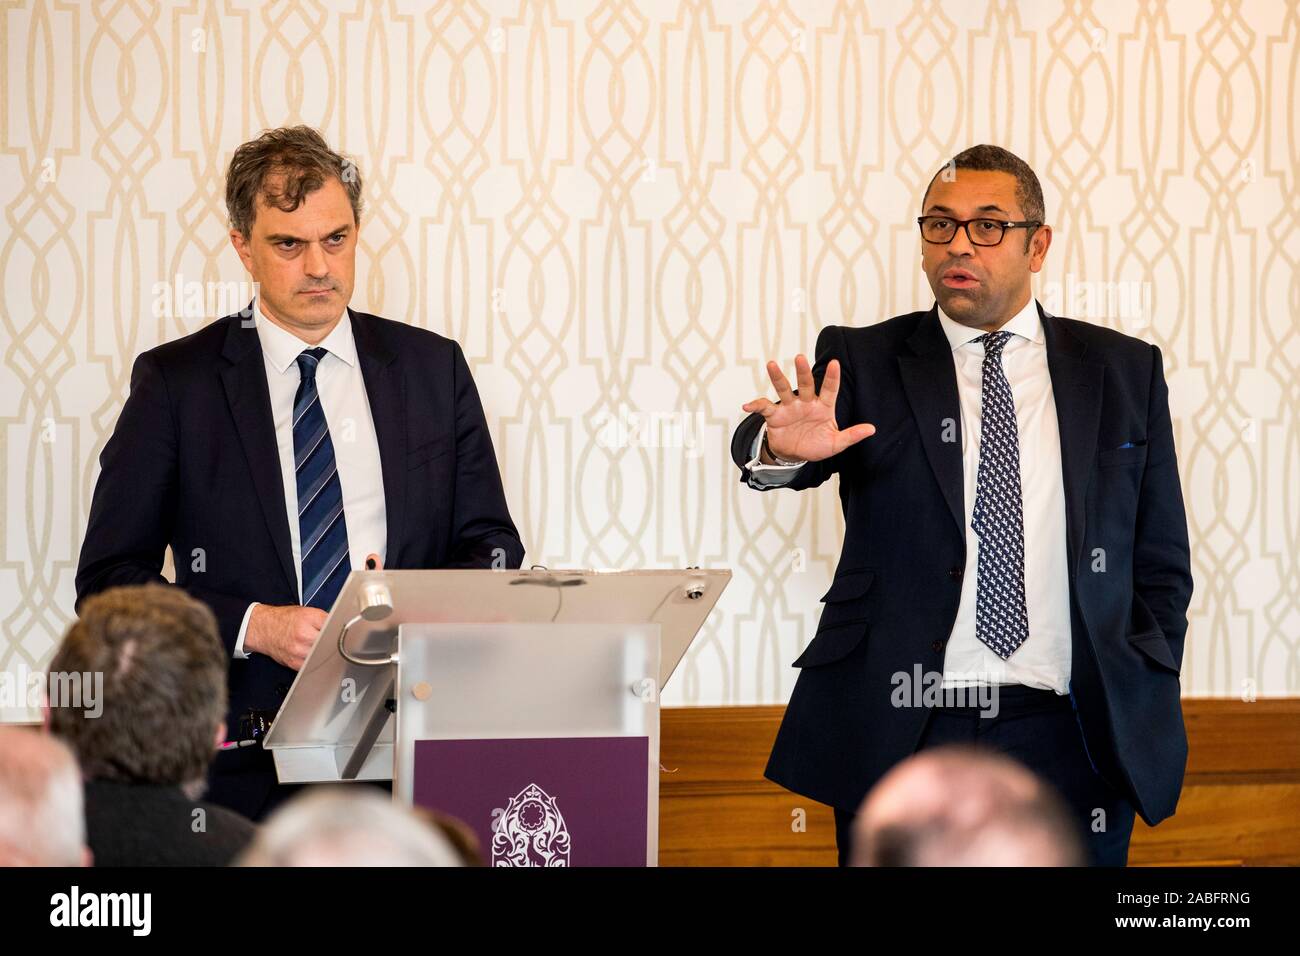 James geschickt (rechts) Vorsitzender der Konservativen Partei beantworten während der Einführung der Nordirland konservativen Manifest an das Culloden Hotel in der Nähe von Belfast zu einer Frage mit Julian Smith Staatssekretär für Nordirland. Stockfoto